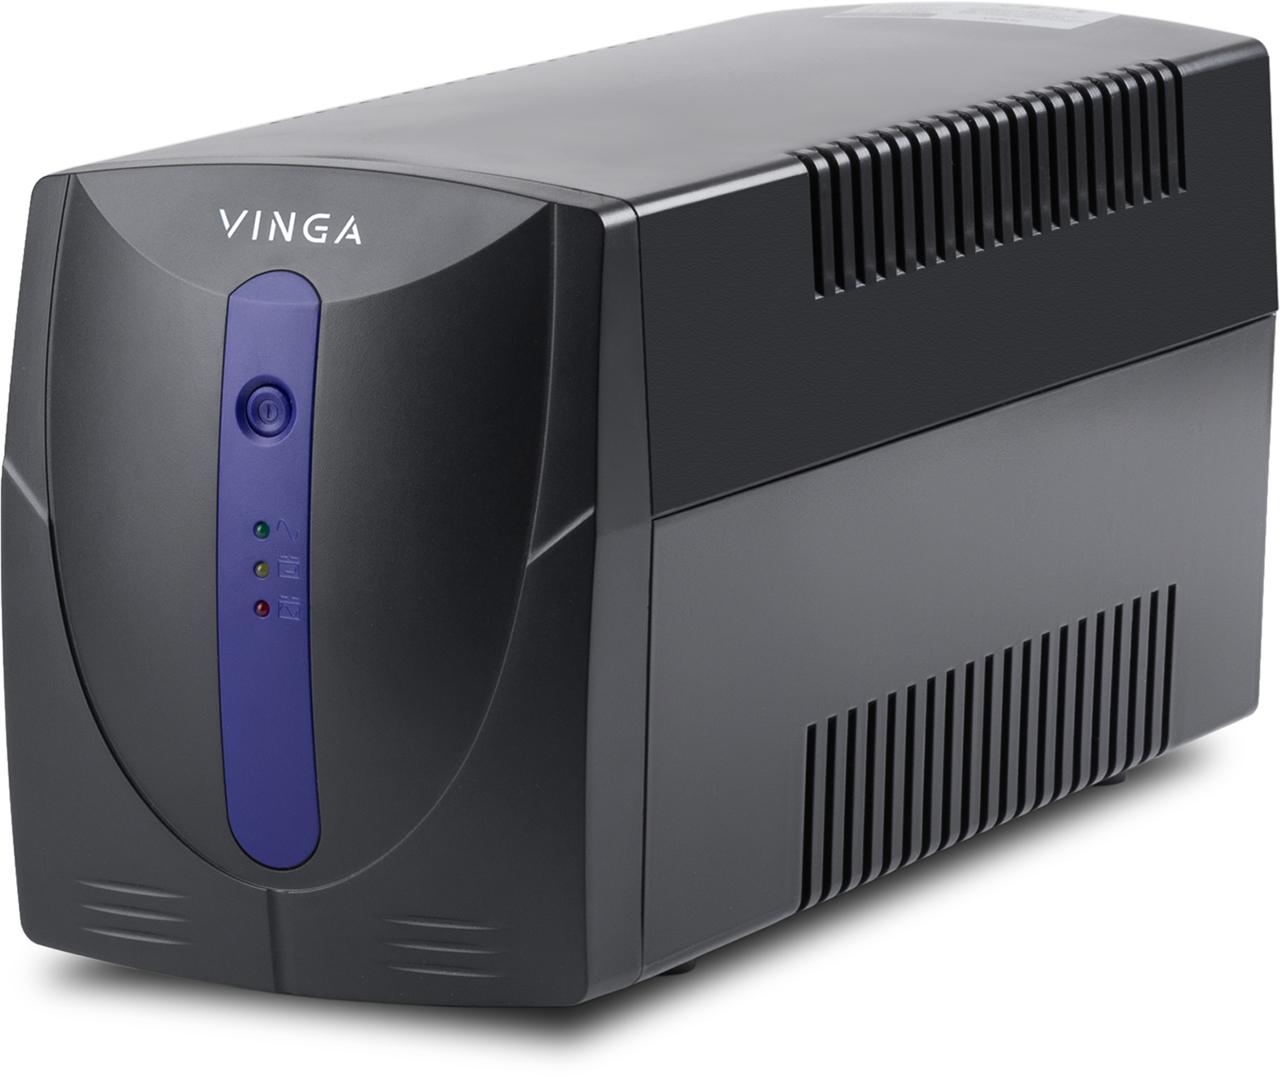 Источник бесперебойного питания Vinga LED 600VA (VPE-600PU) характеристики - фотография 7